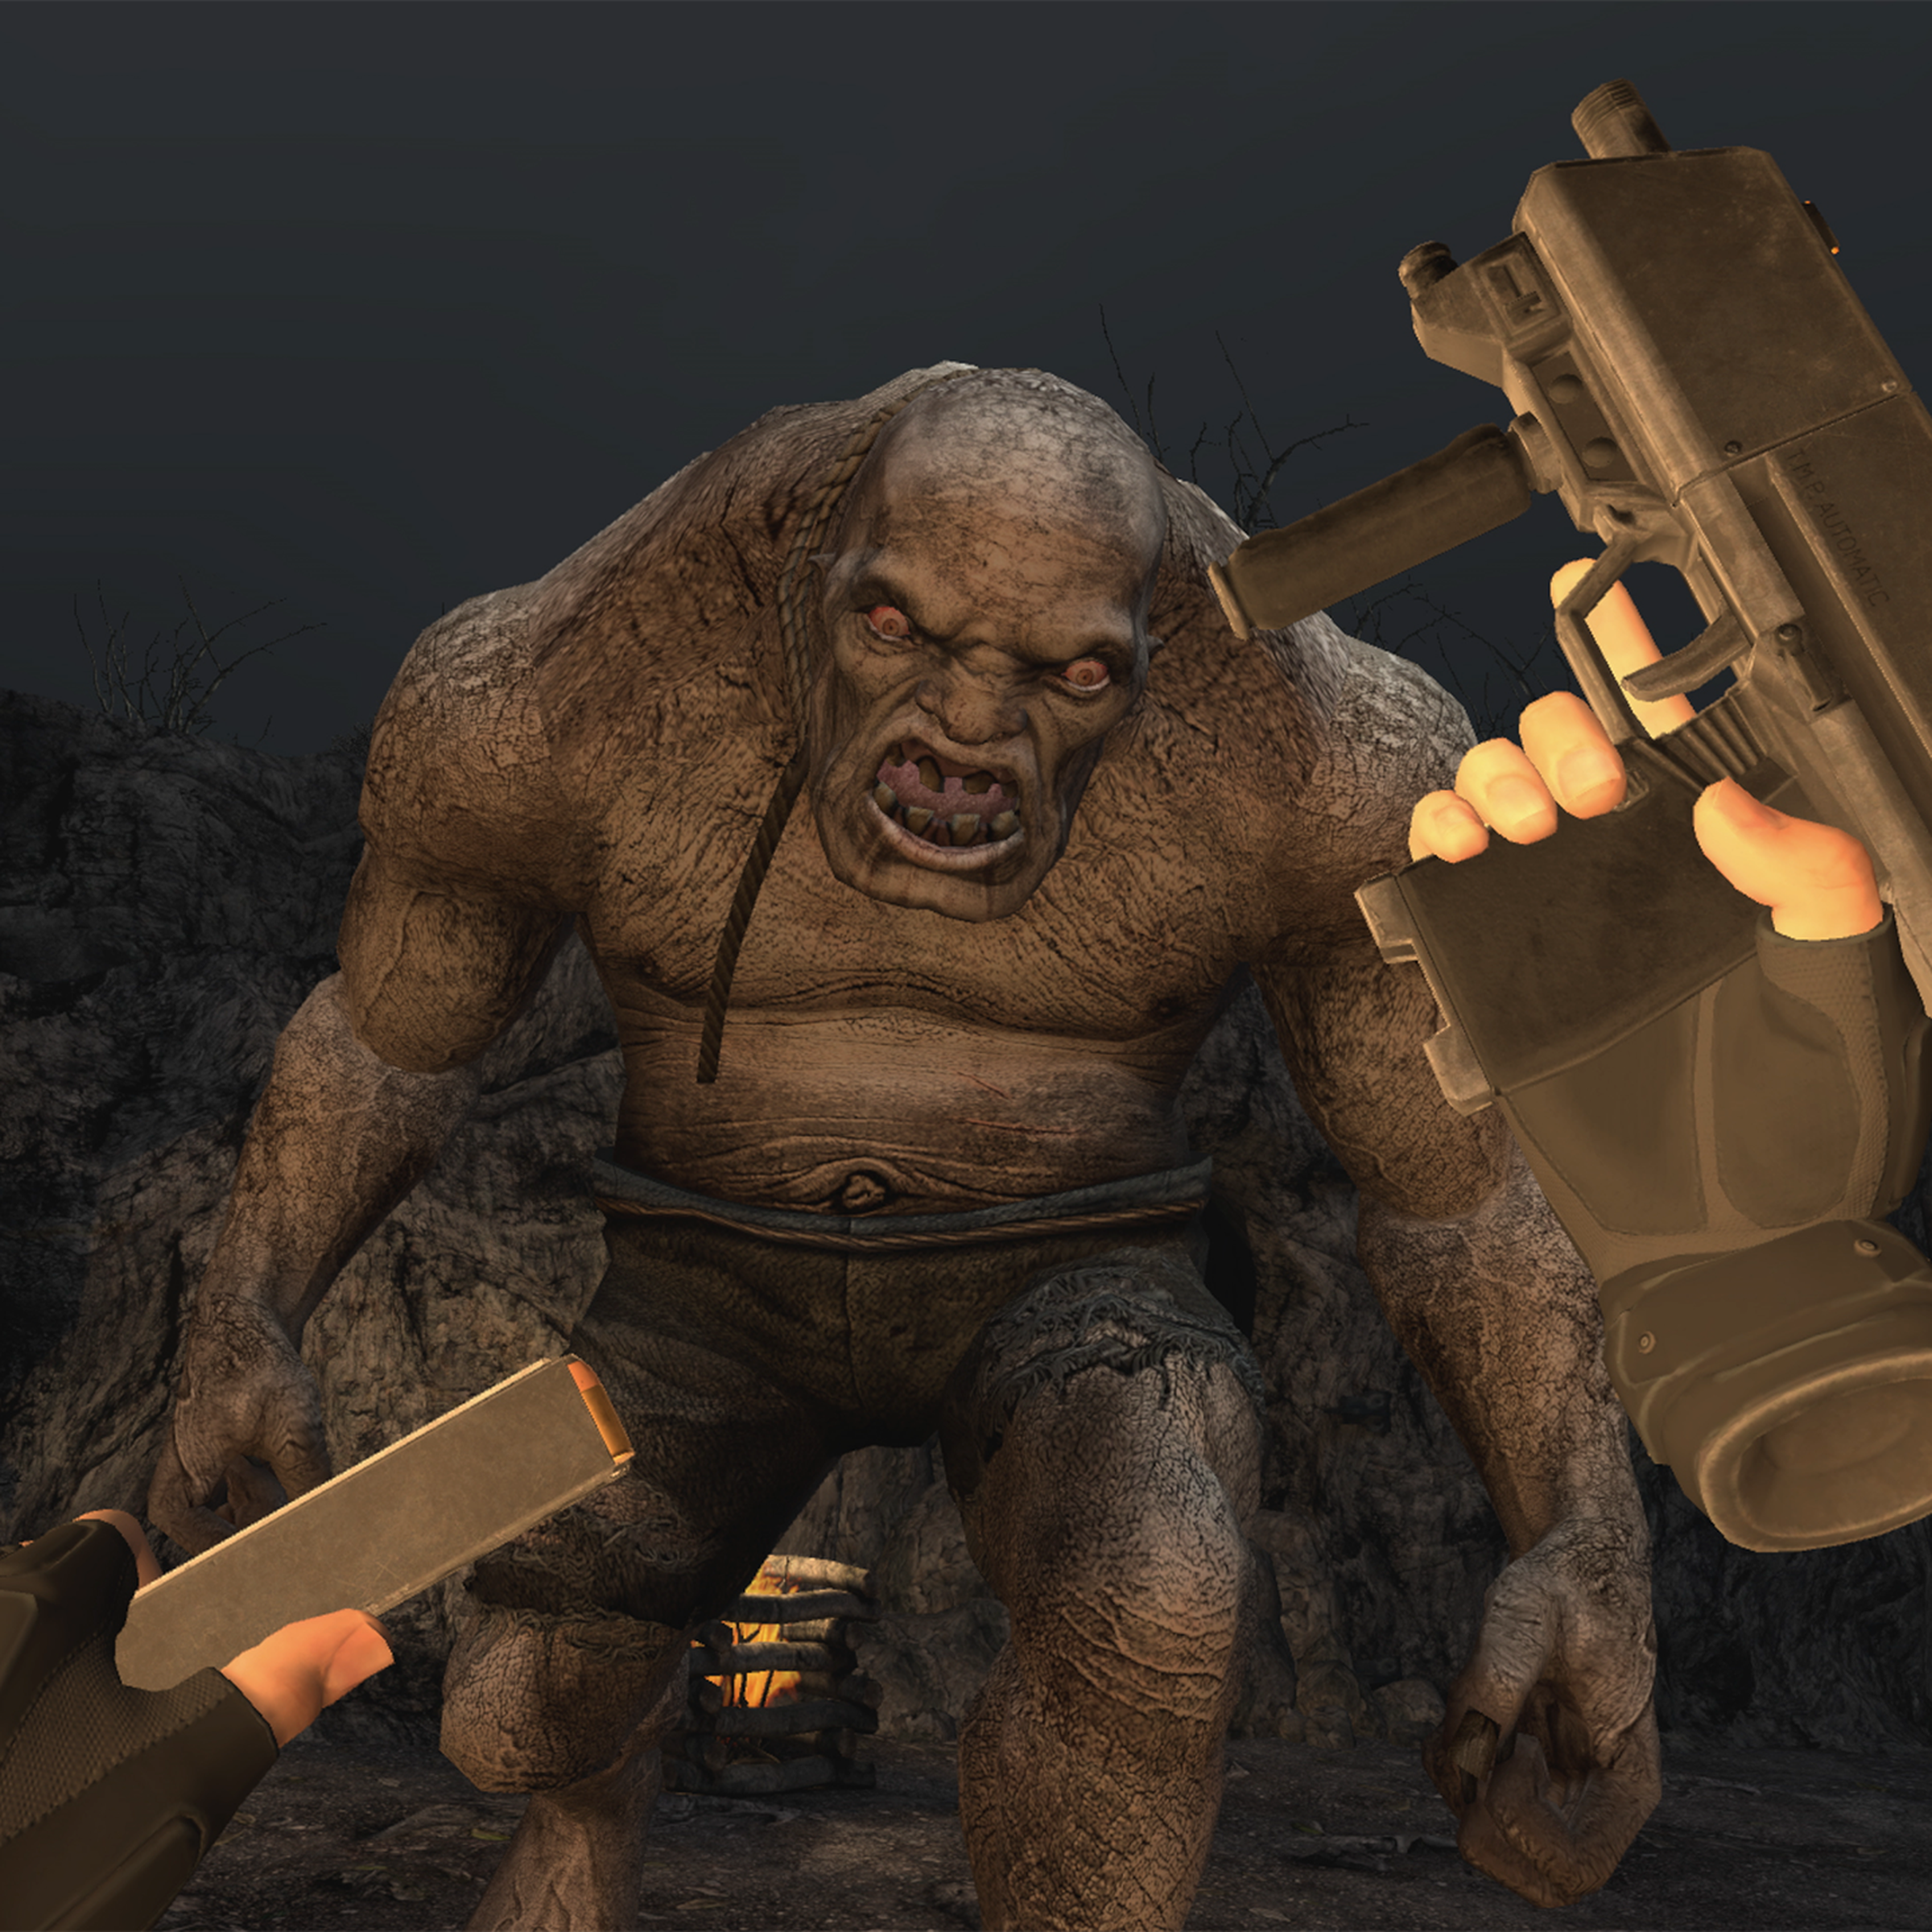 Resident Evil 4 VR - El Gigante fight